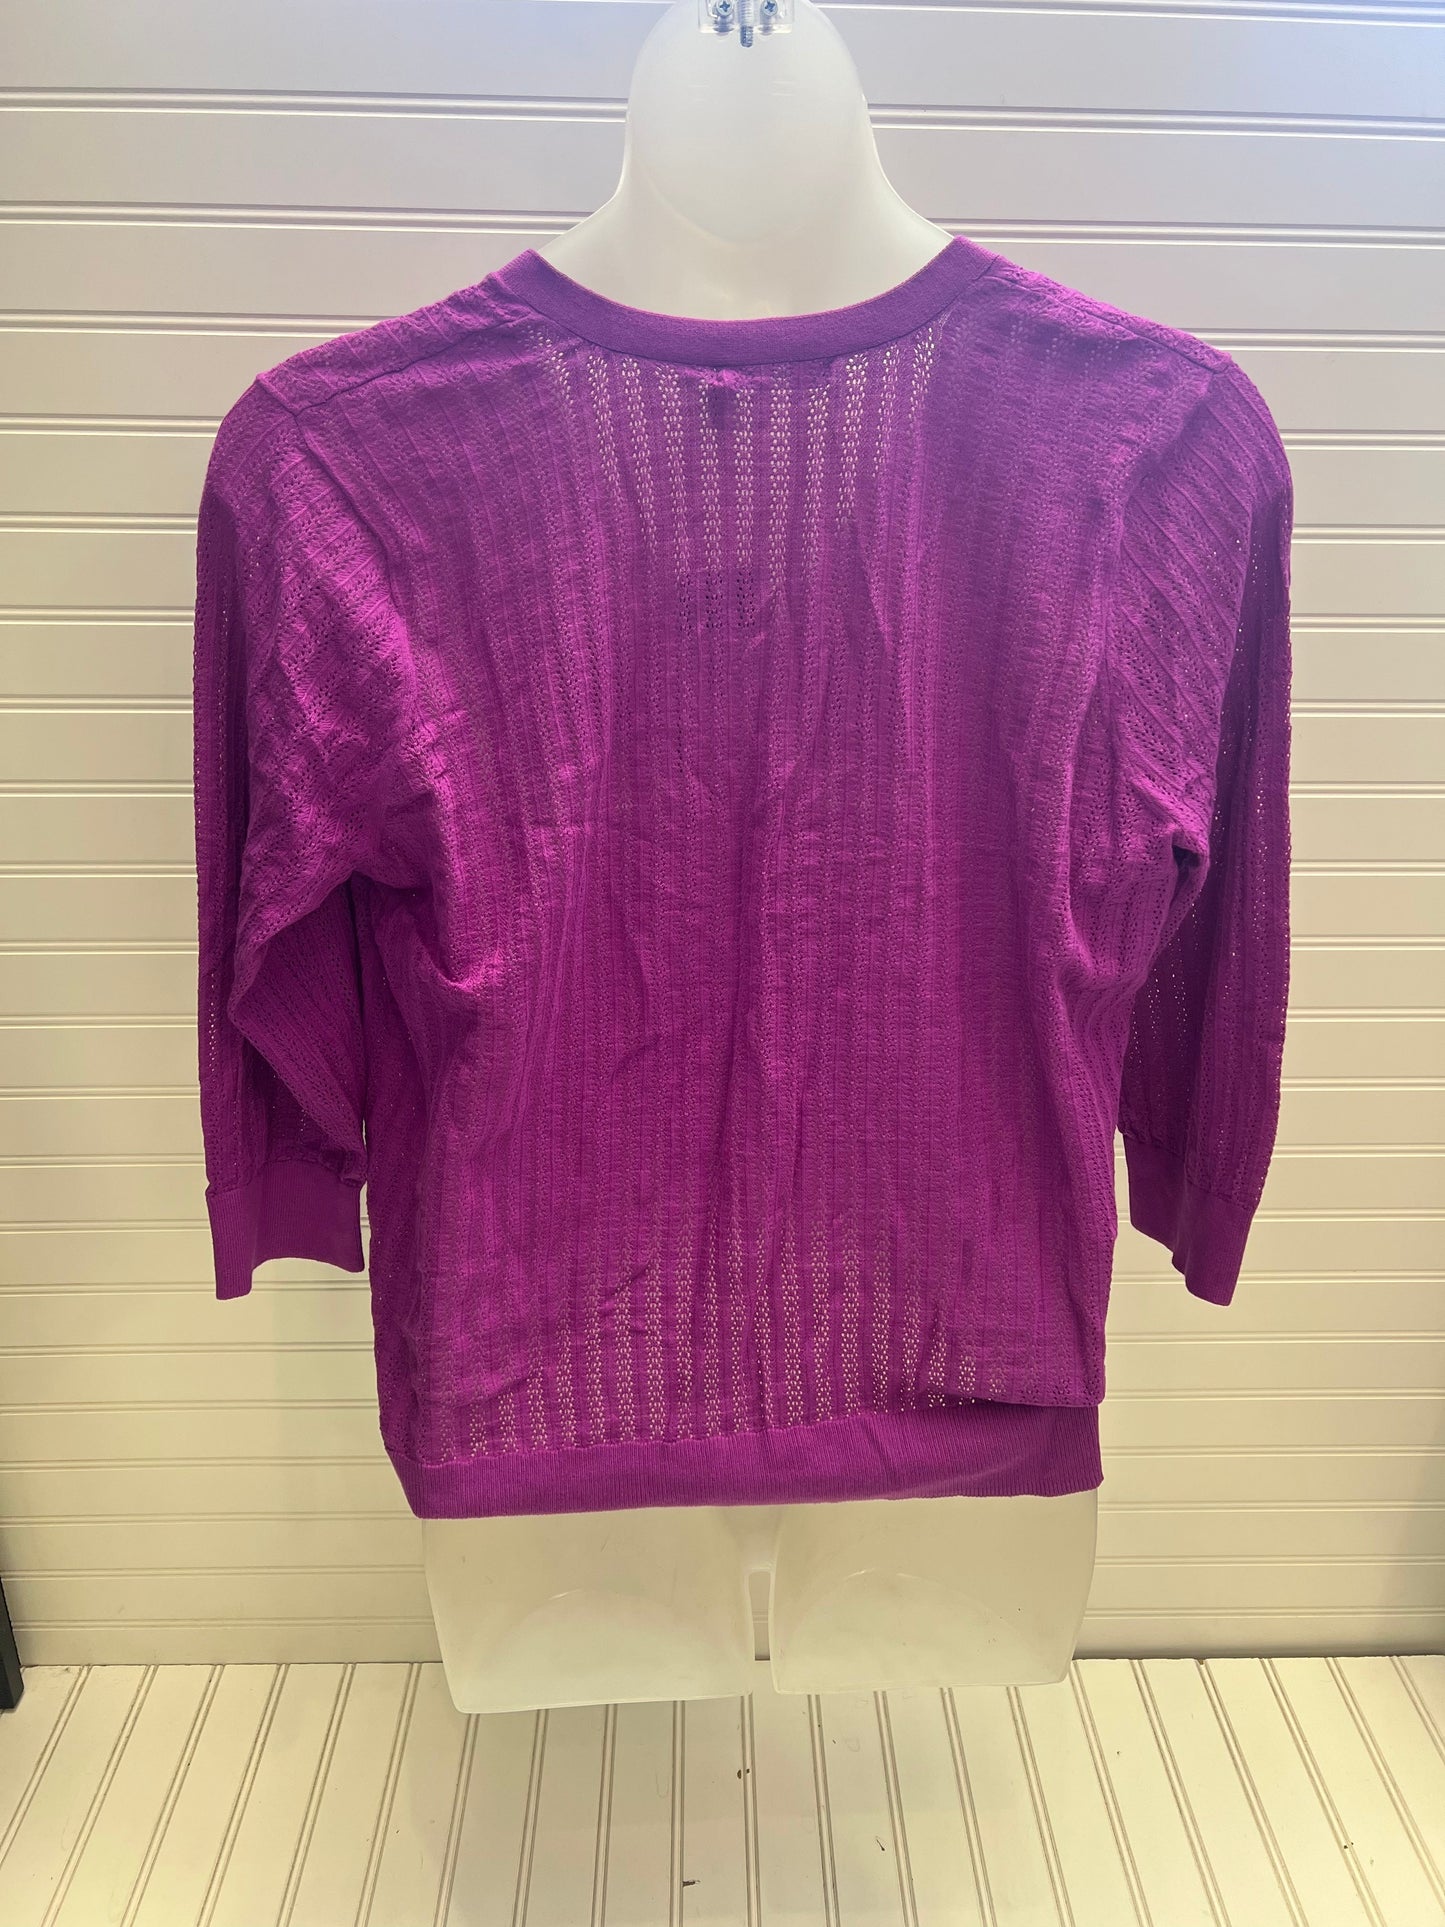 Sweater Cardigan Designer By Lauren By Ralph Lauren  Size: 2x